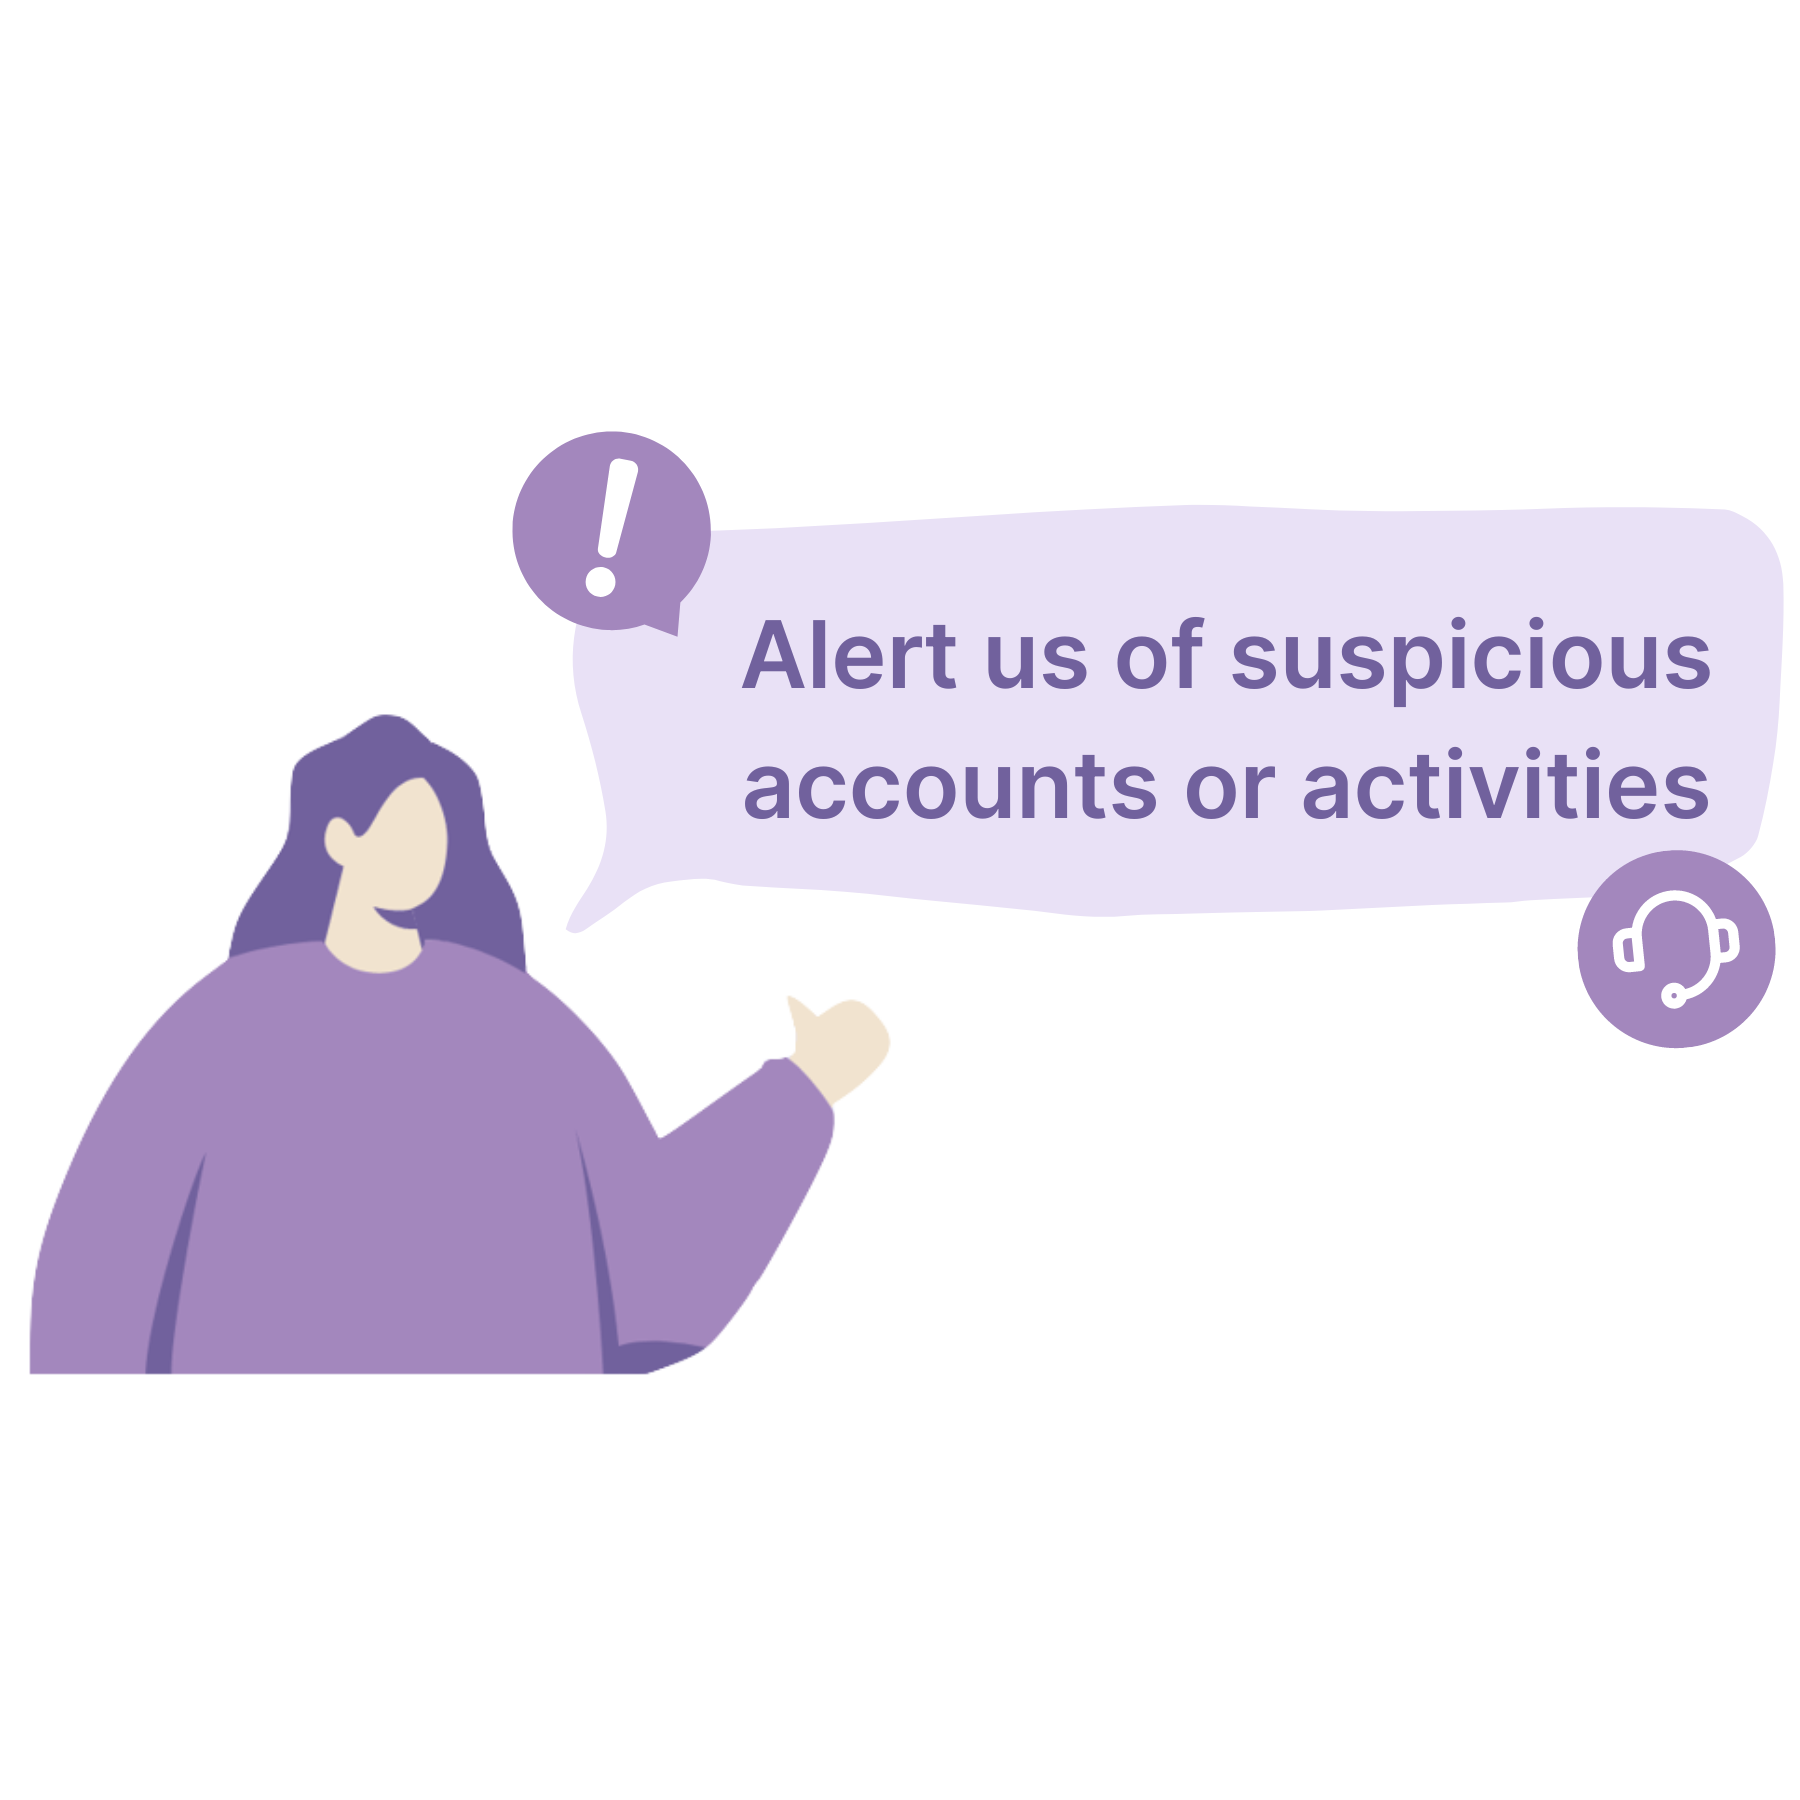 Report suspicious activities